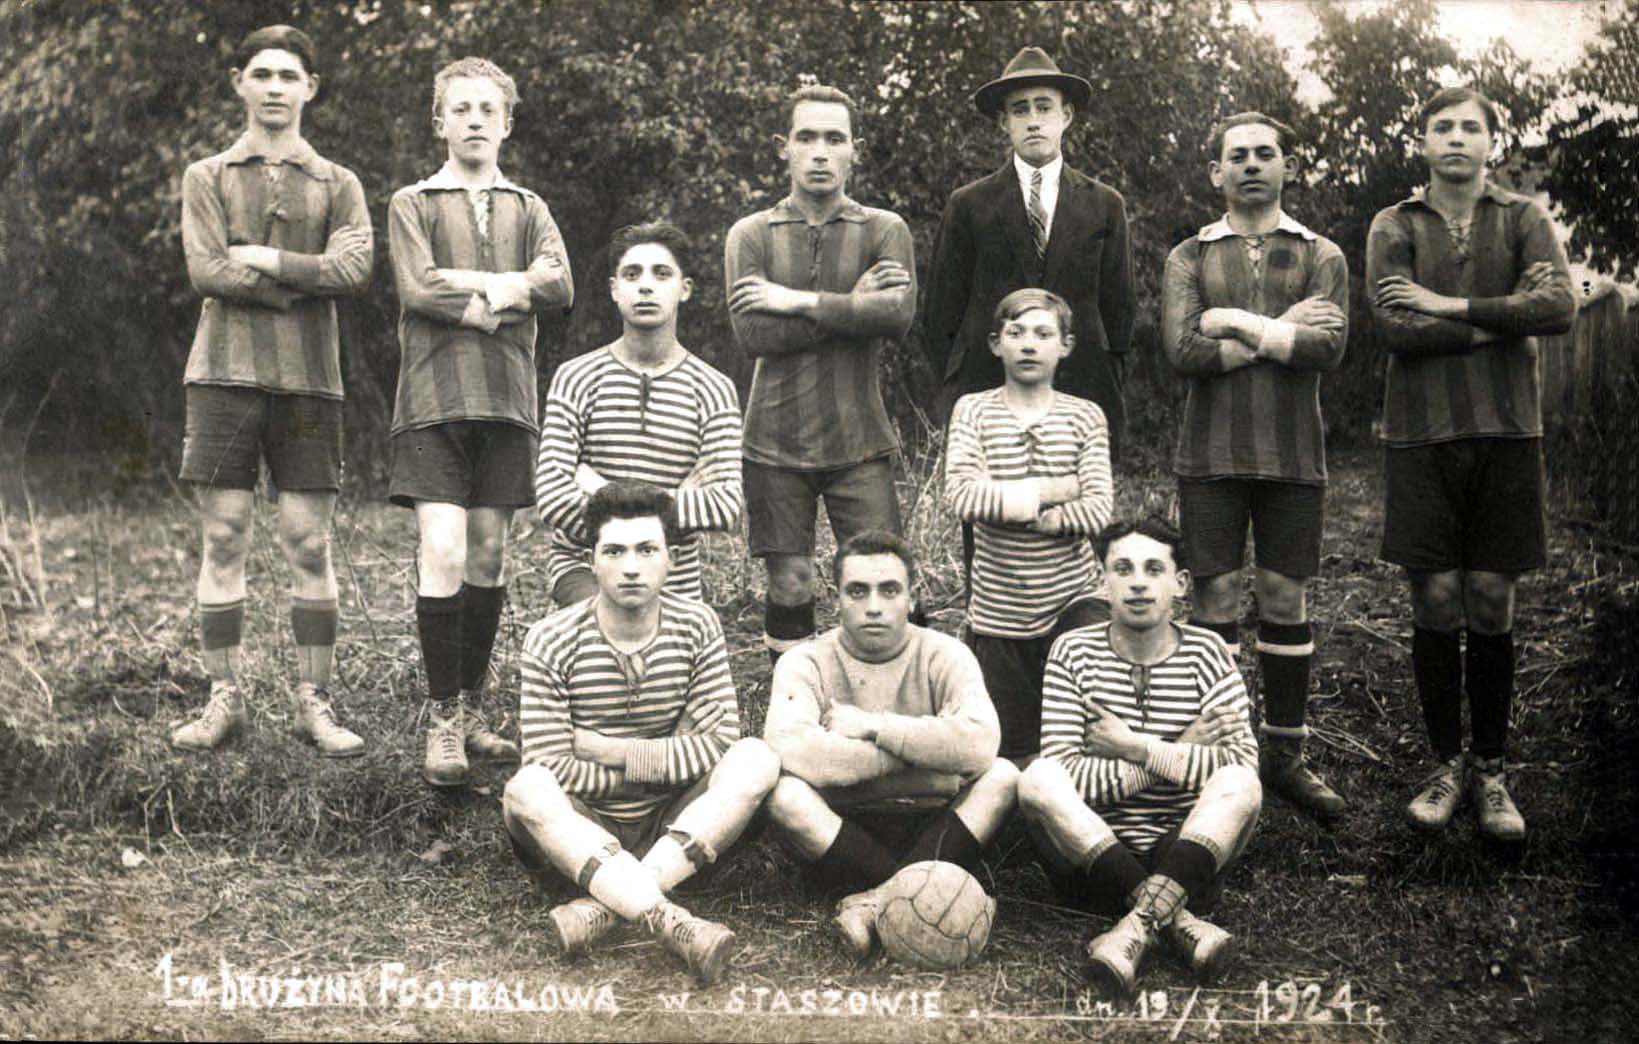 Staszów, Polen, 19.10.1926, Mitglieder einer Fußballmannschaft